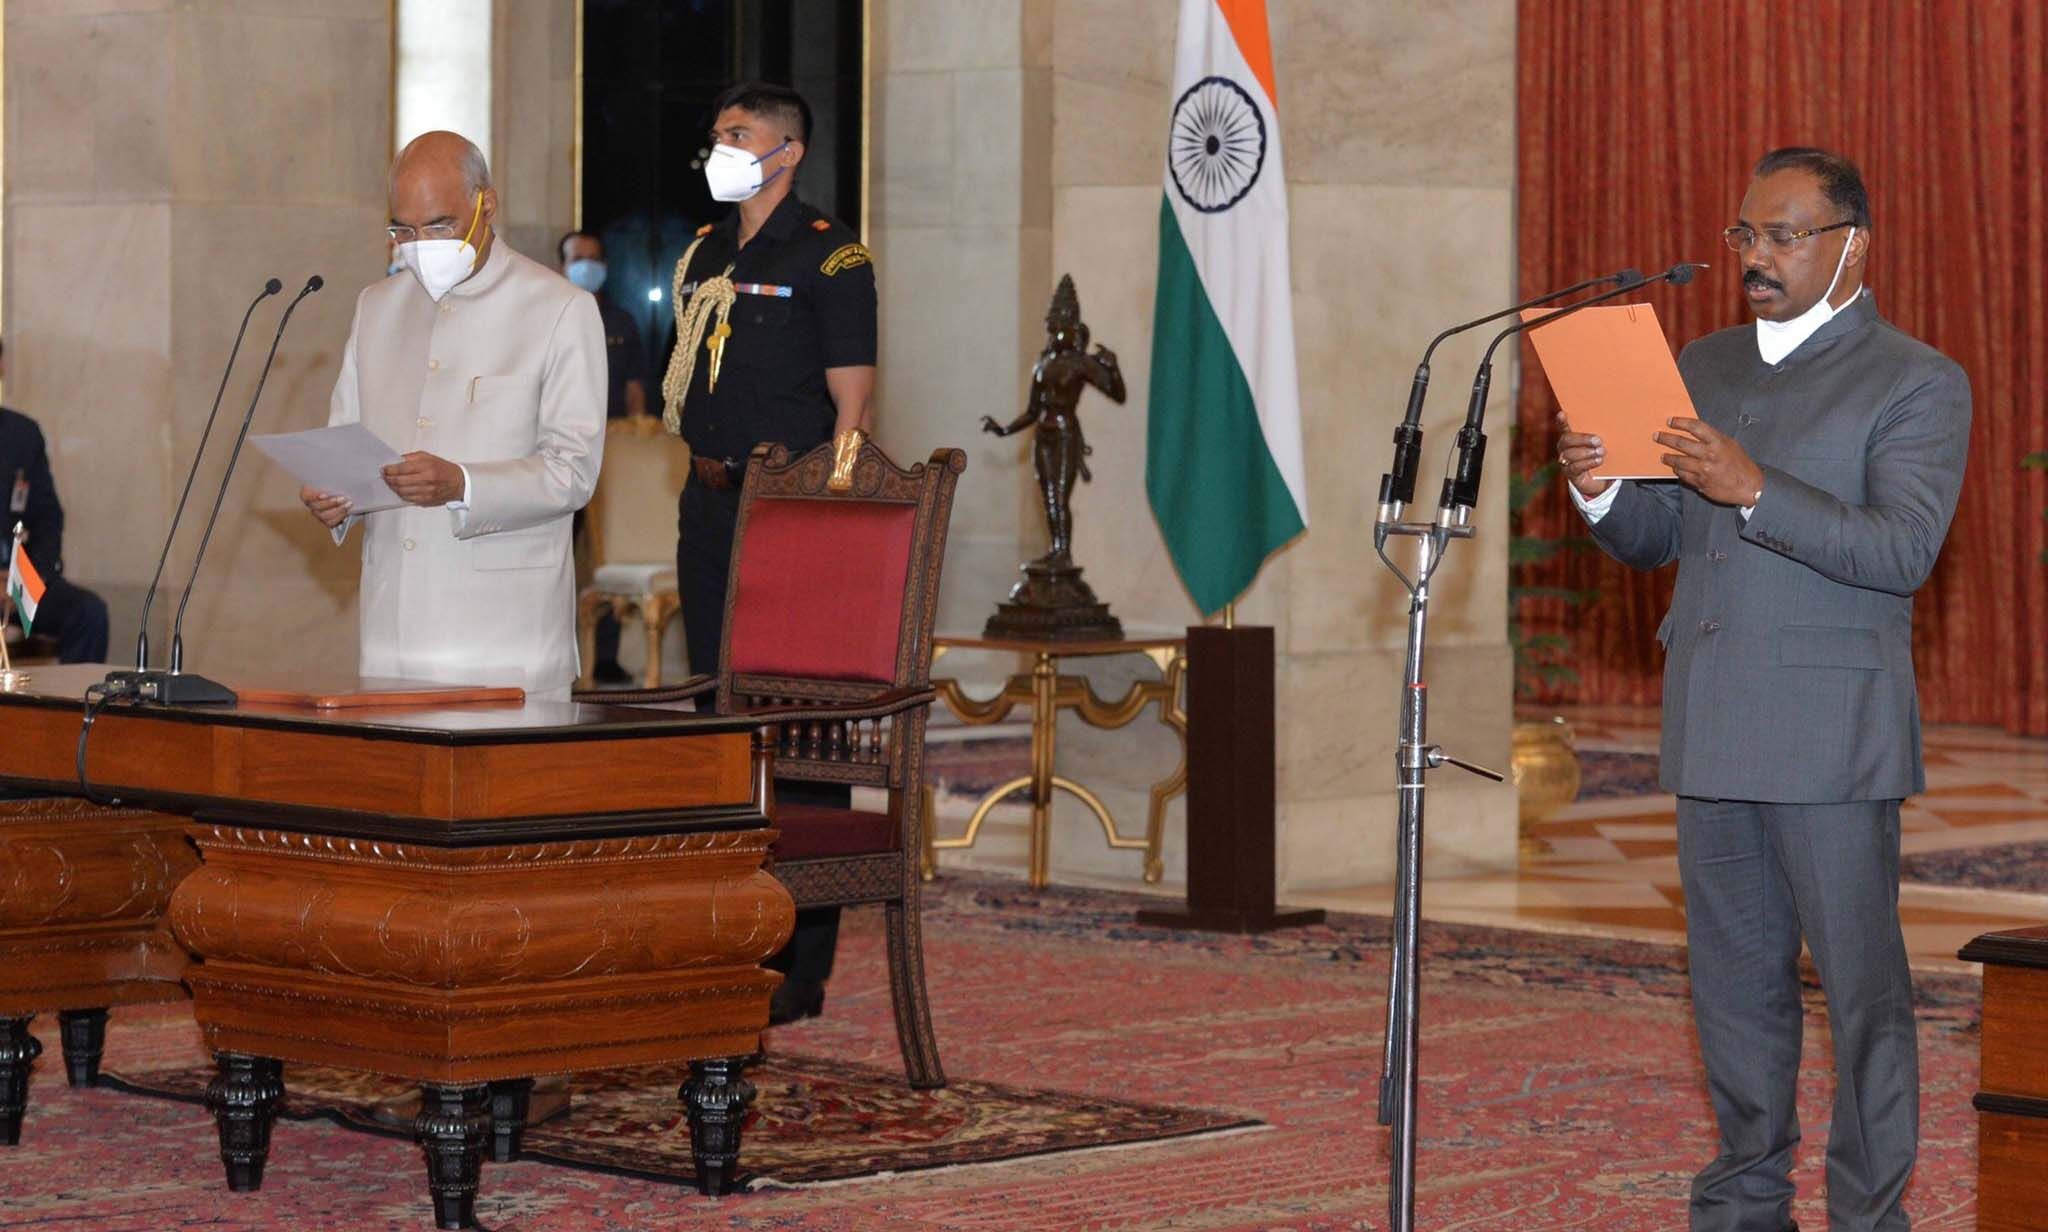 गिरीश चंद्र मुर्मू ने भारत के नियंत्रक एवं महालेखा परीक्षक के रूप में पदभार संभाला